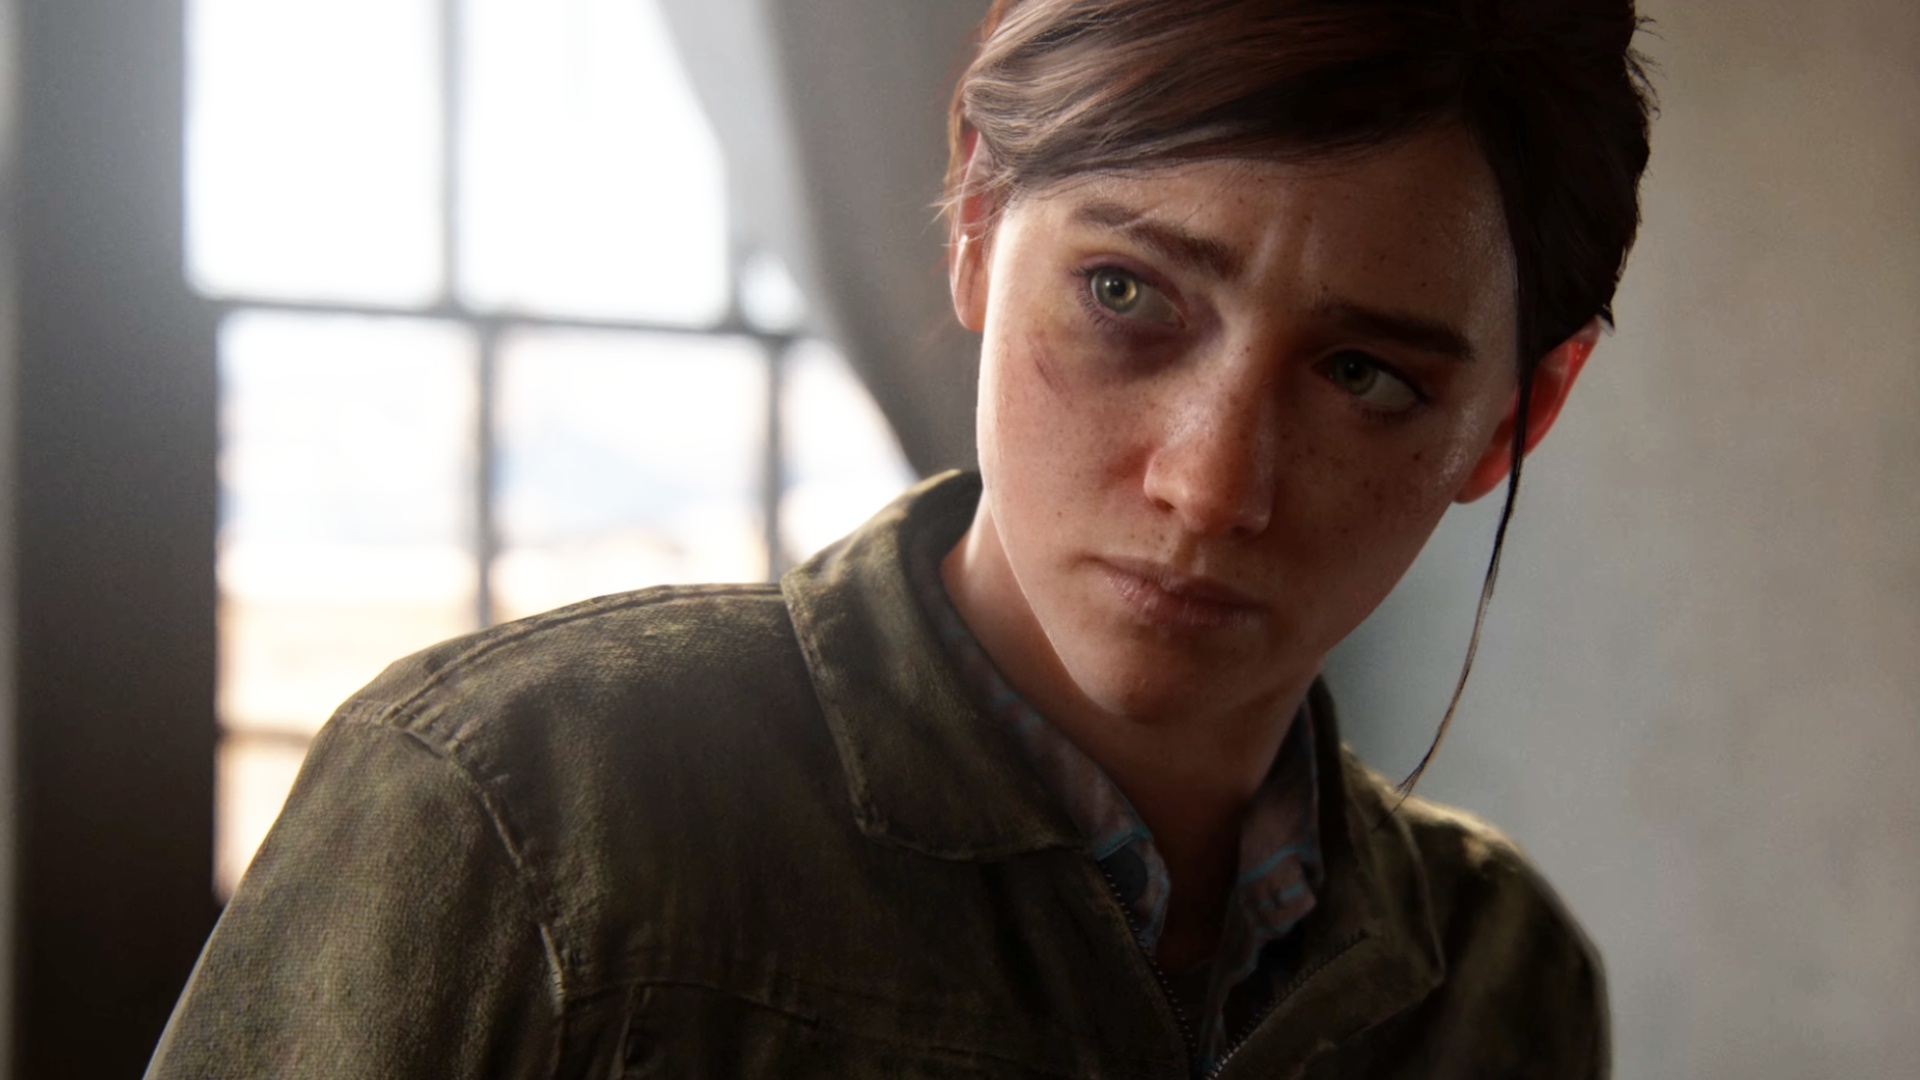 De multiplayer-game Last of Us is geannuleerd, maar Naughty Dog plaagt verschillende nieuwe games voor één speler